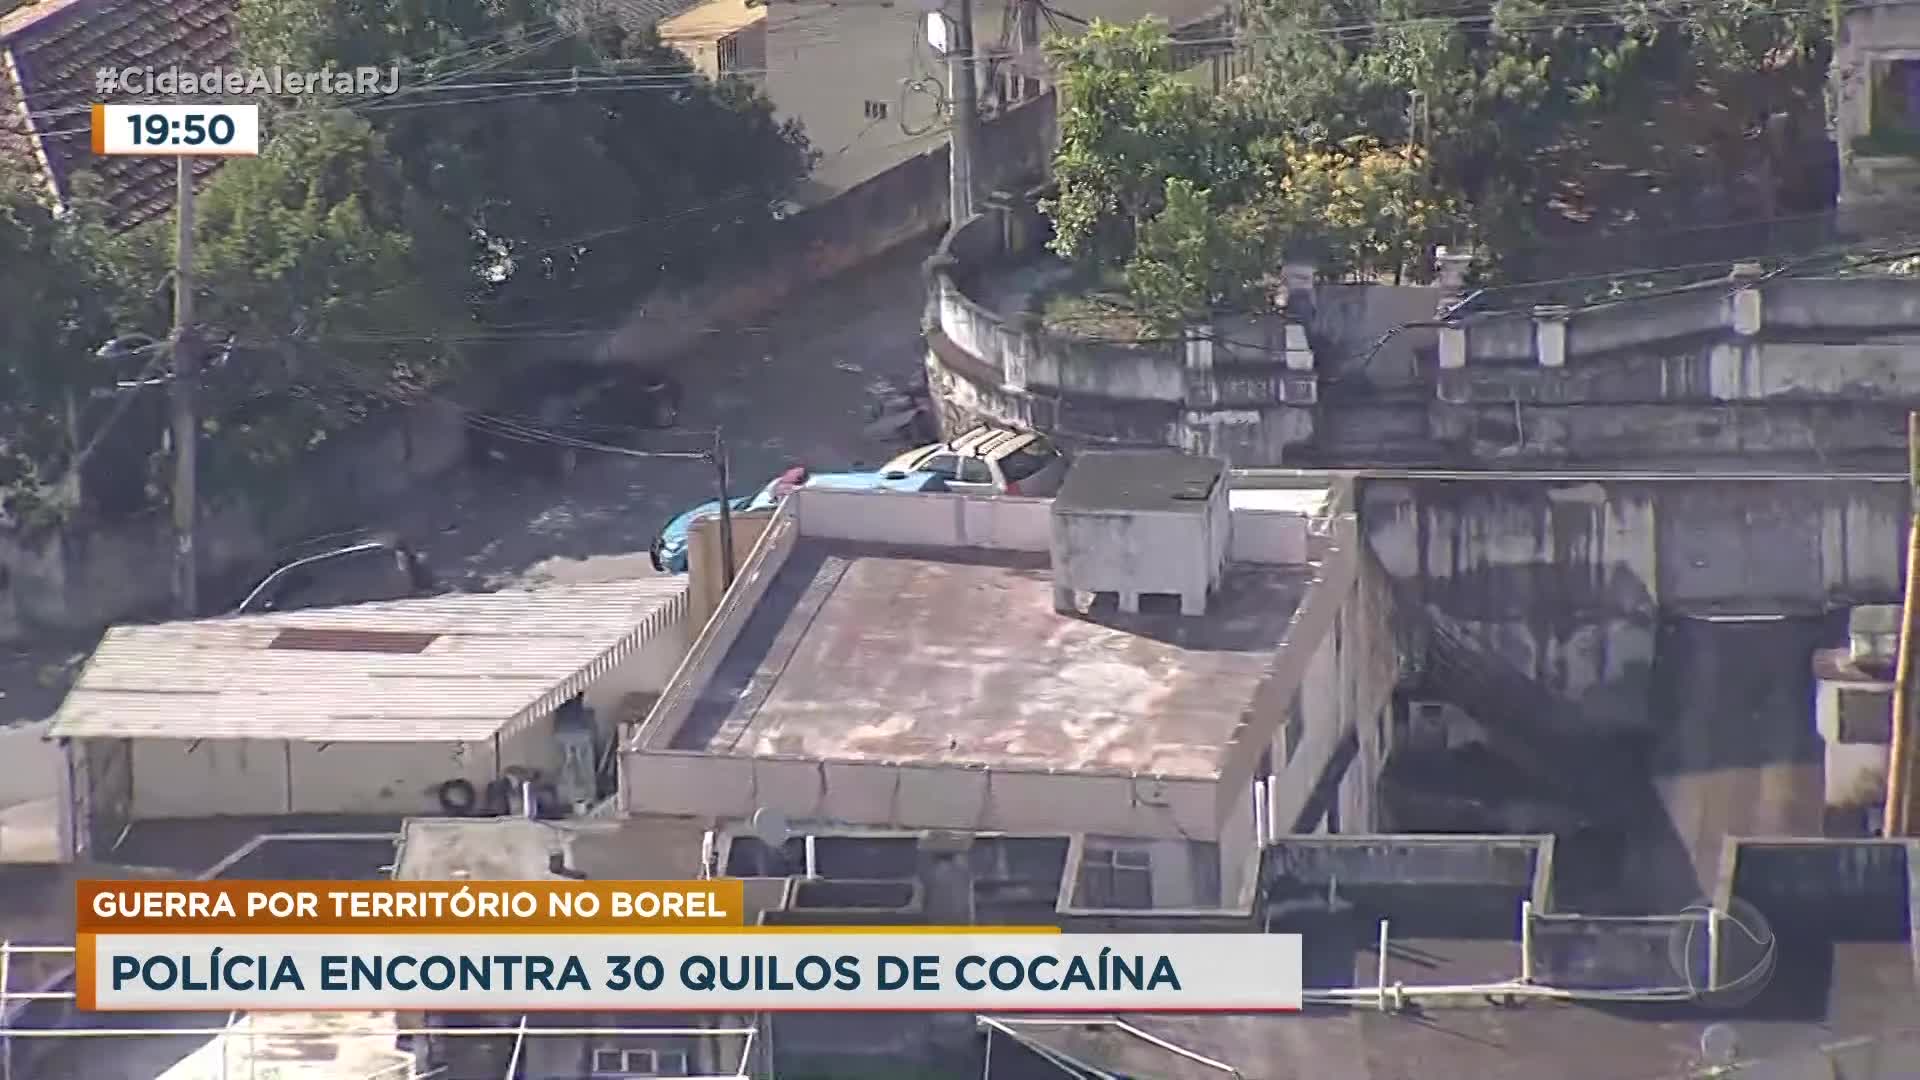 Vídeo: Policial baleado durante tiroteio no morro da Caixa d'Água é sepultado no Rio